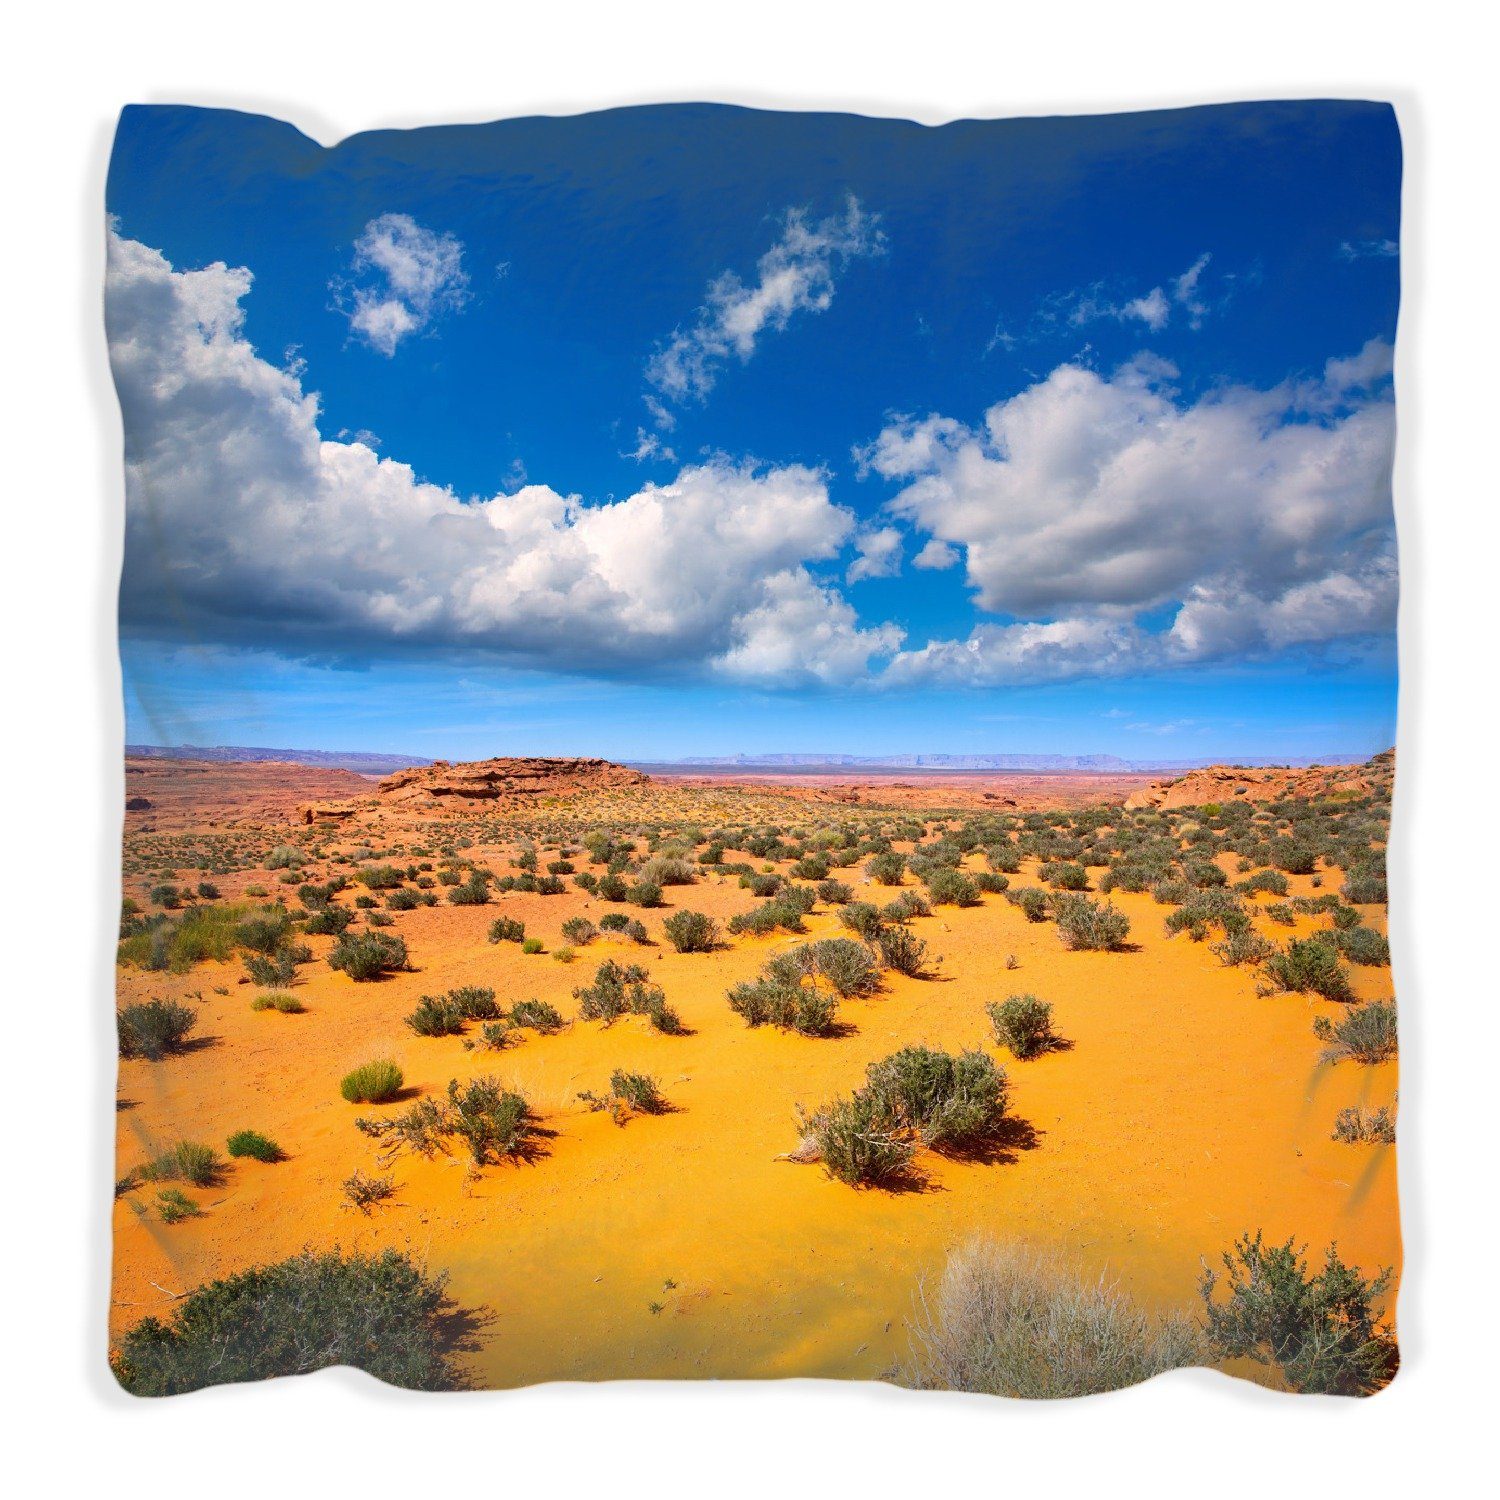 Wallario Dekokissen Wüste in Arizona mit handgenäht Wolken blauer - Himmel I